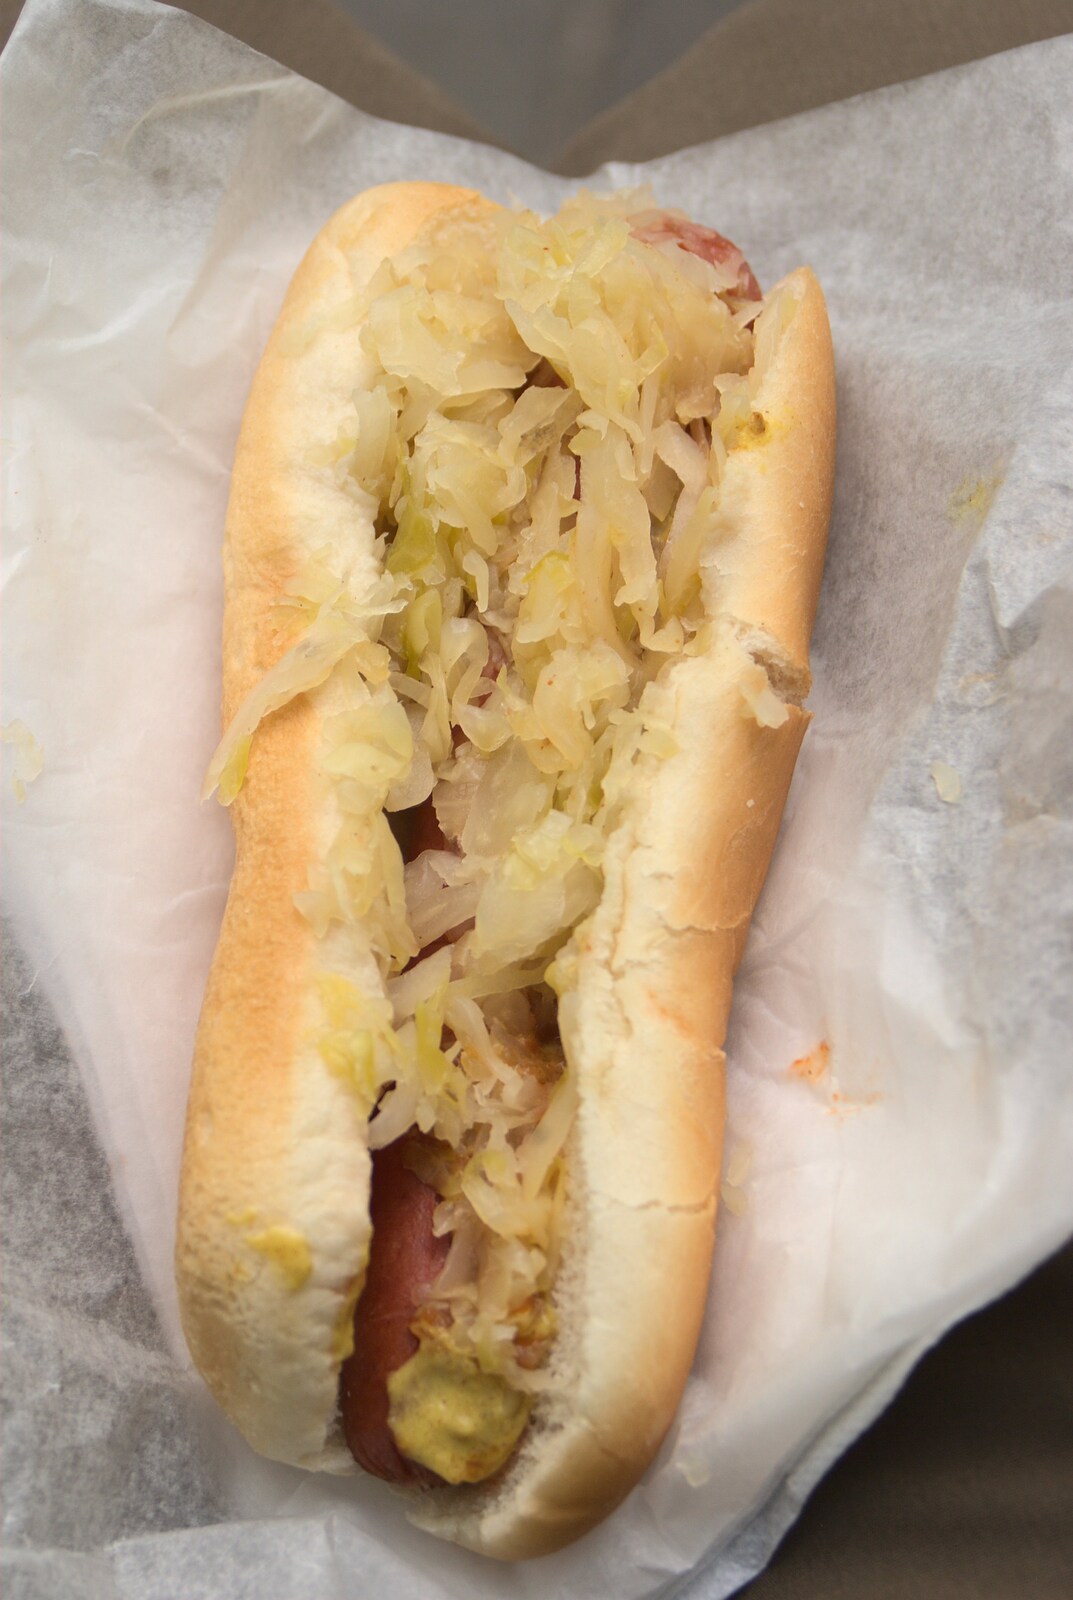 Nosher's second hotdog - with Sauerkraut from A Manhattan Hotdog, New York, USA - 21st August 2011